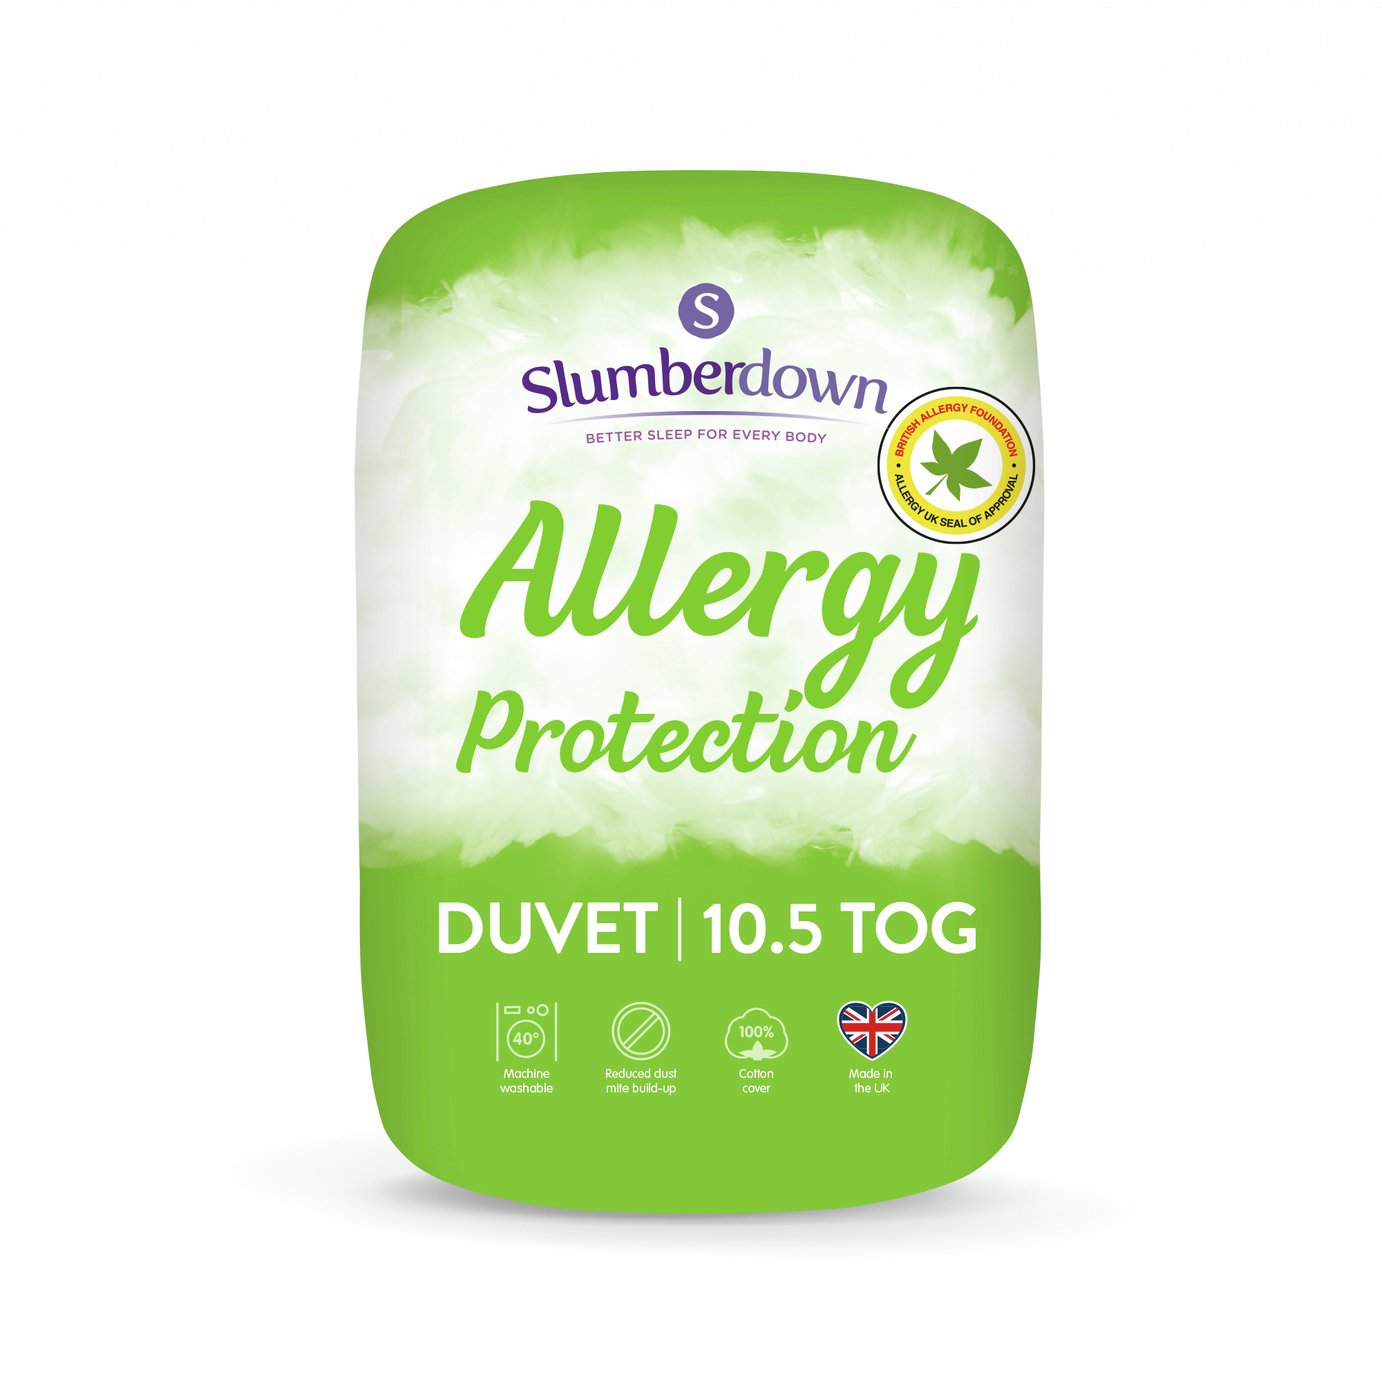 Slumberdown Allergy Protection 10.5 Tog Duvet - Kingsize